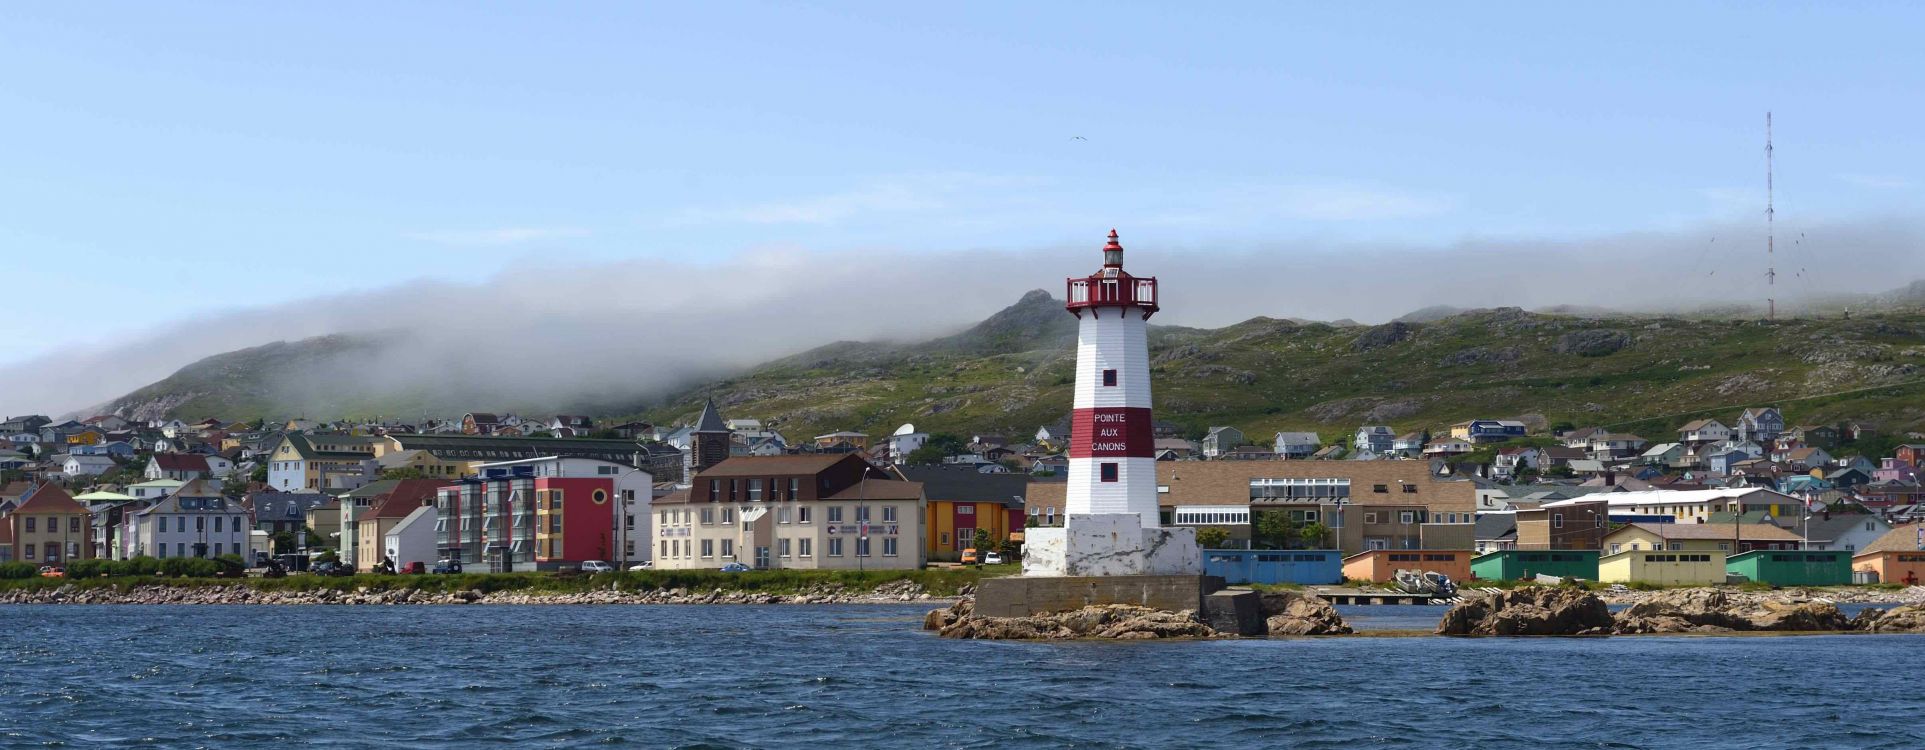 Port de Saint Pierre, reportage photographique sur l'archipel de Saint Pierre et Miquelon, collectivité française d'Outre Mer d'Amérique du Nord, le 18 juillet 2014